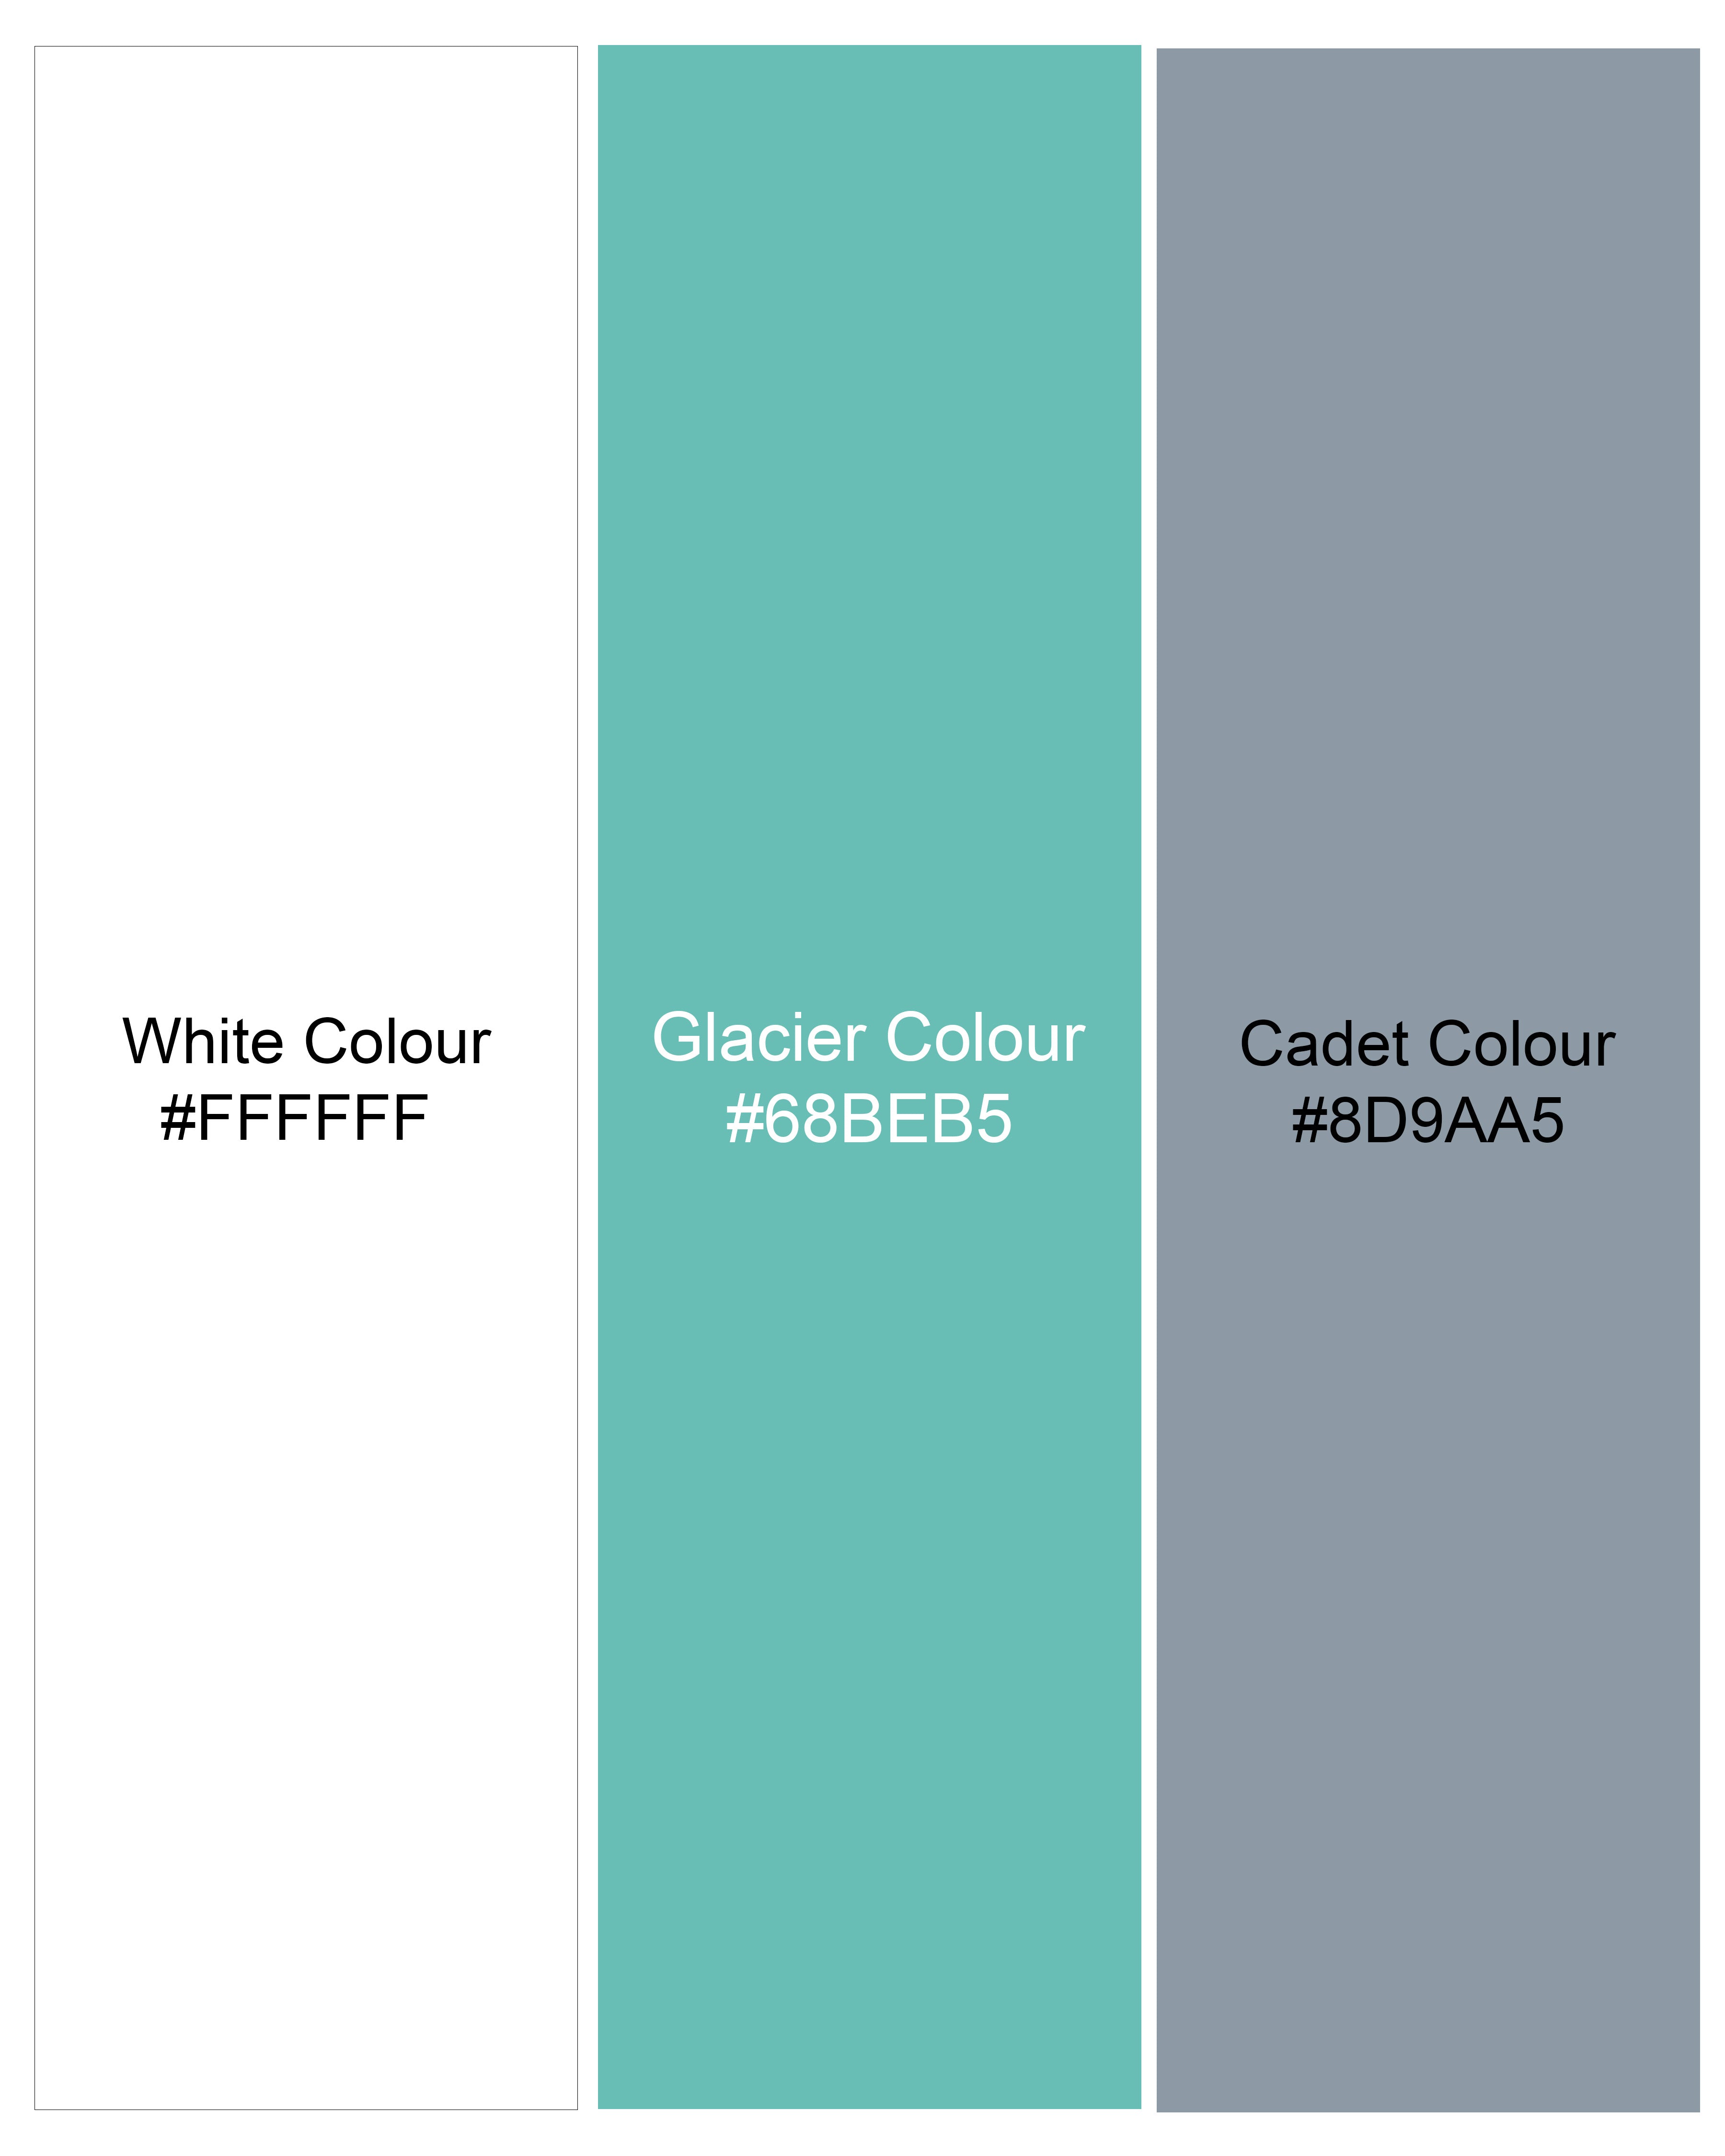 Glacier Aqua Green and White Twill Windowpane Premium Cotton Short,SR238-28, SR238-30, SR238-32, SR238-34, SR238-36, SR238-38, SR238-40, SR238-42, SR238-44